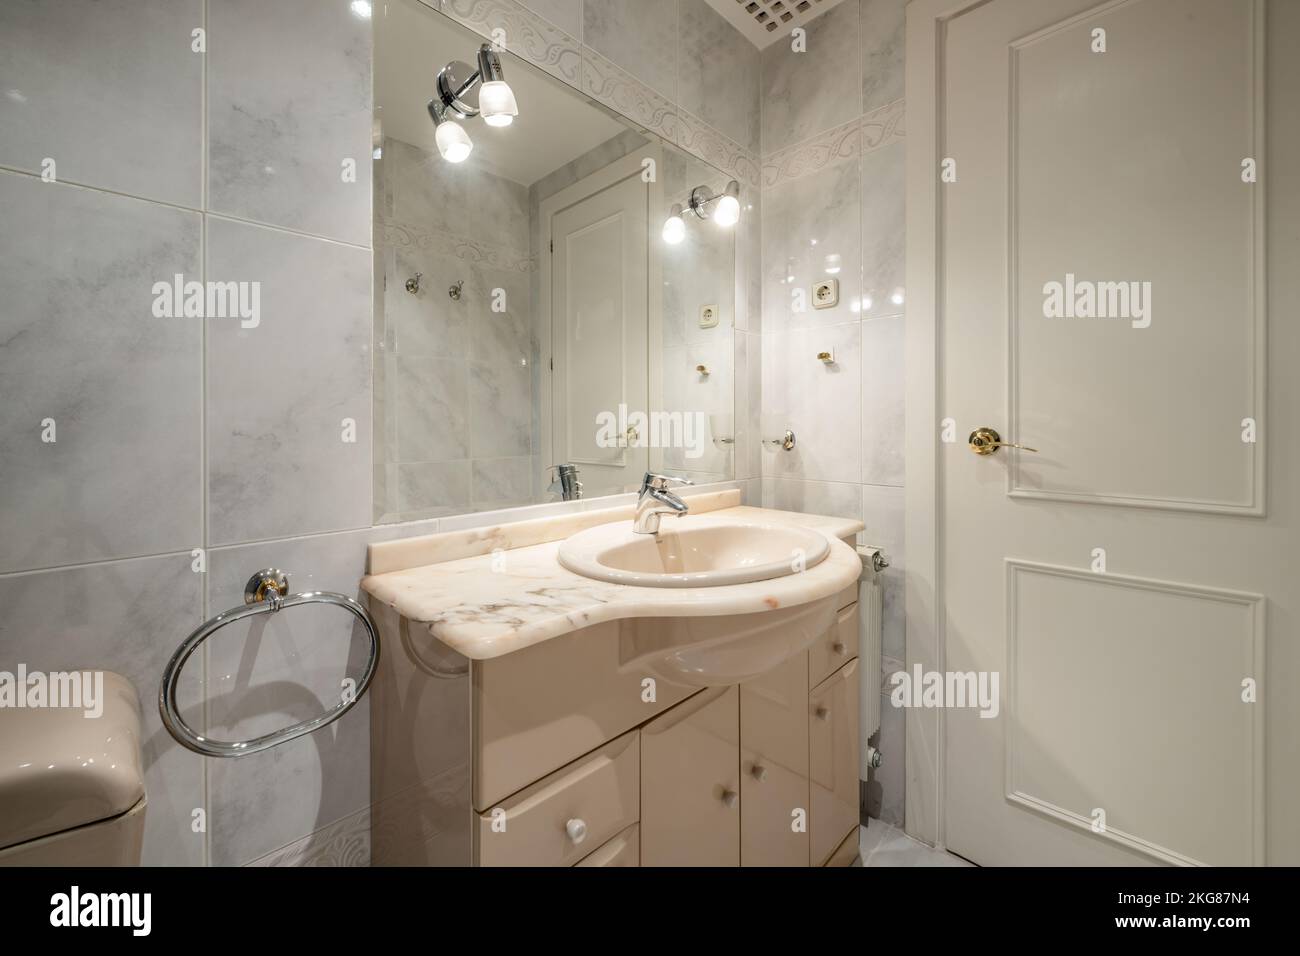 Salle de bains classique avec sanitaires crème, miroir biseauté intégré dans le mur avec porte en bois blanche Banque D'Images